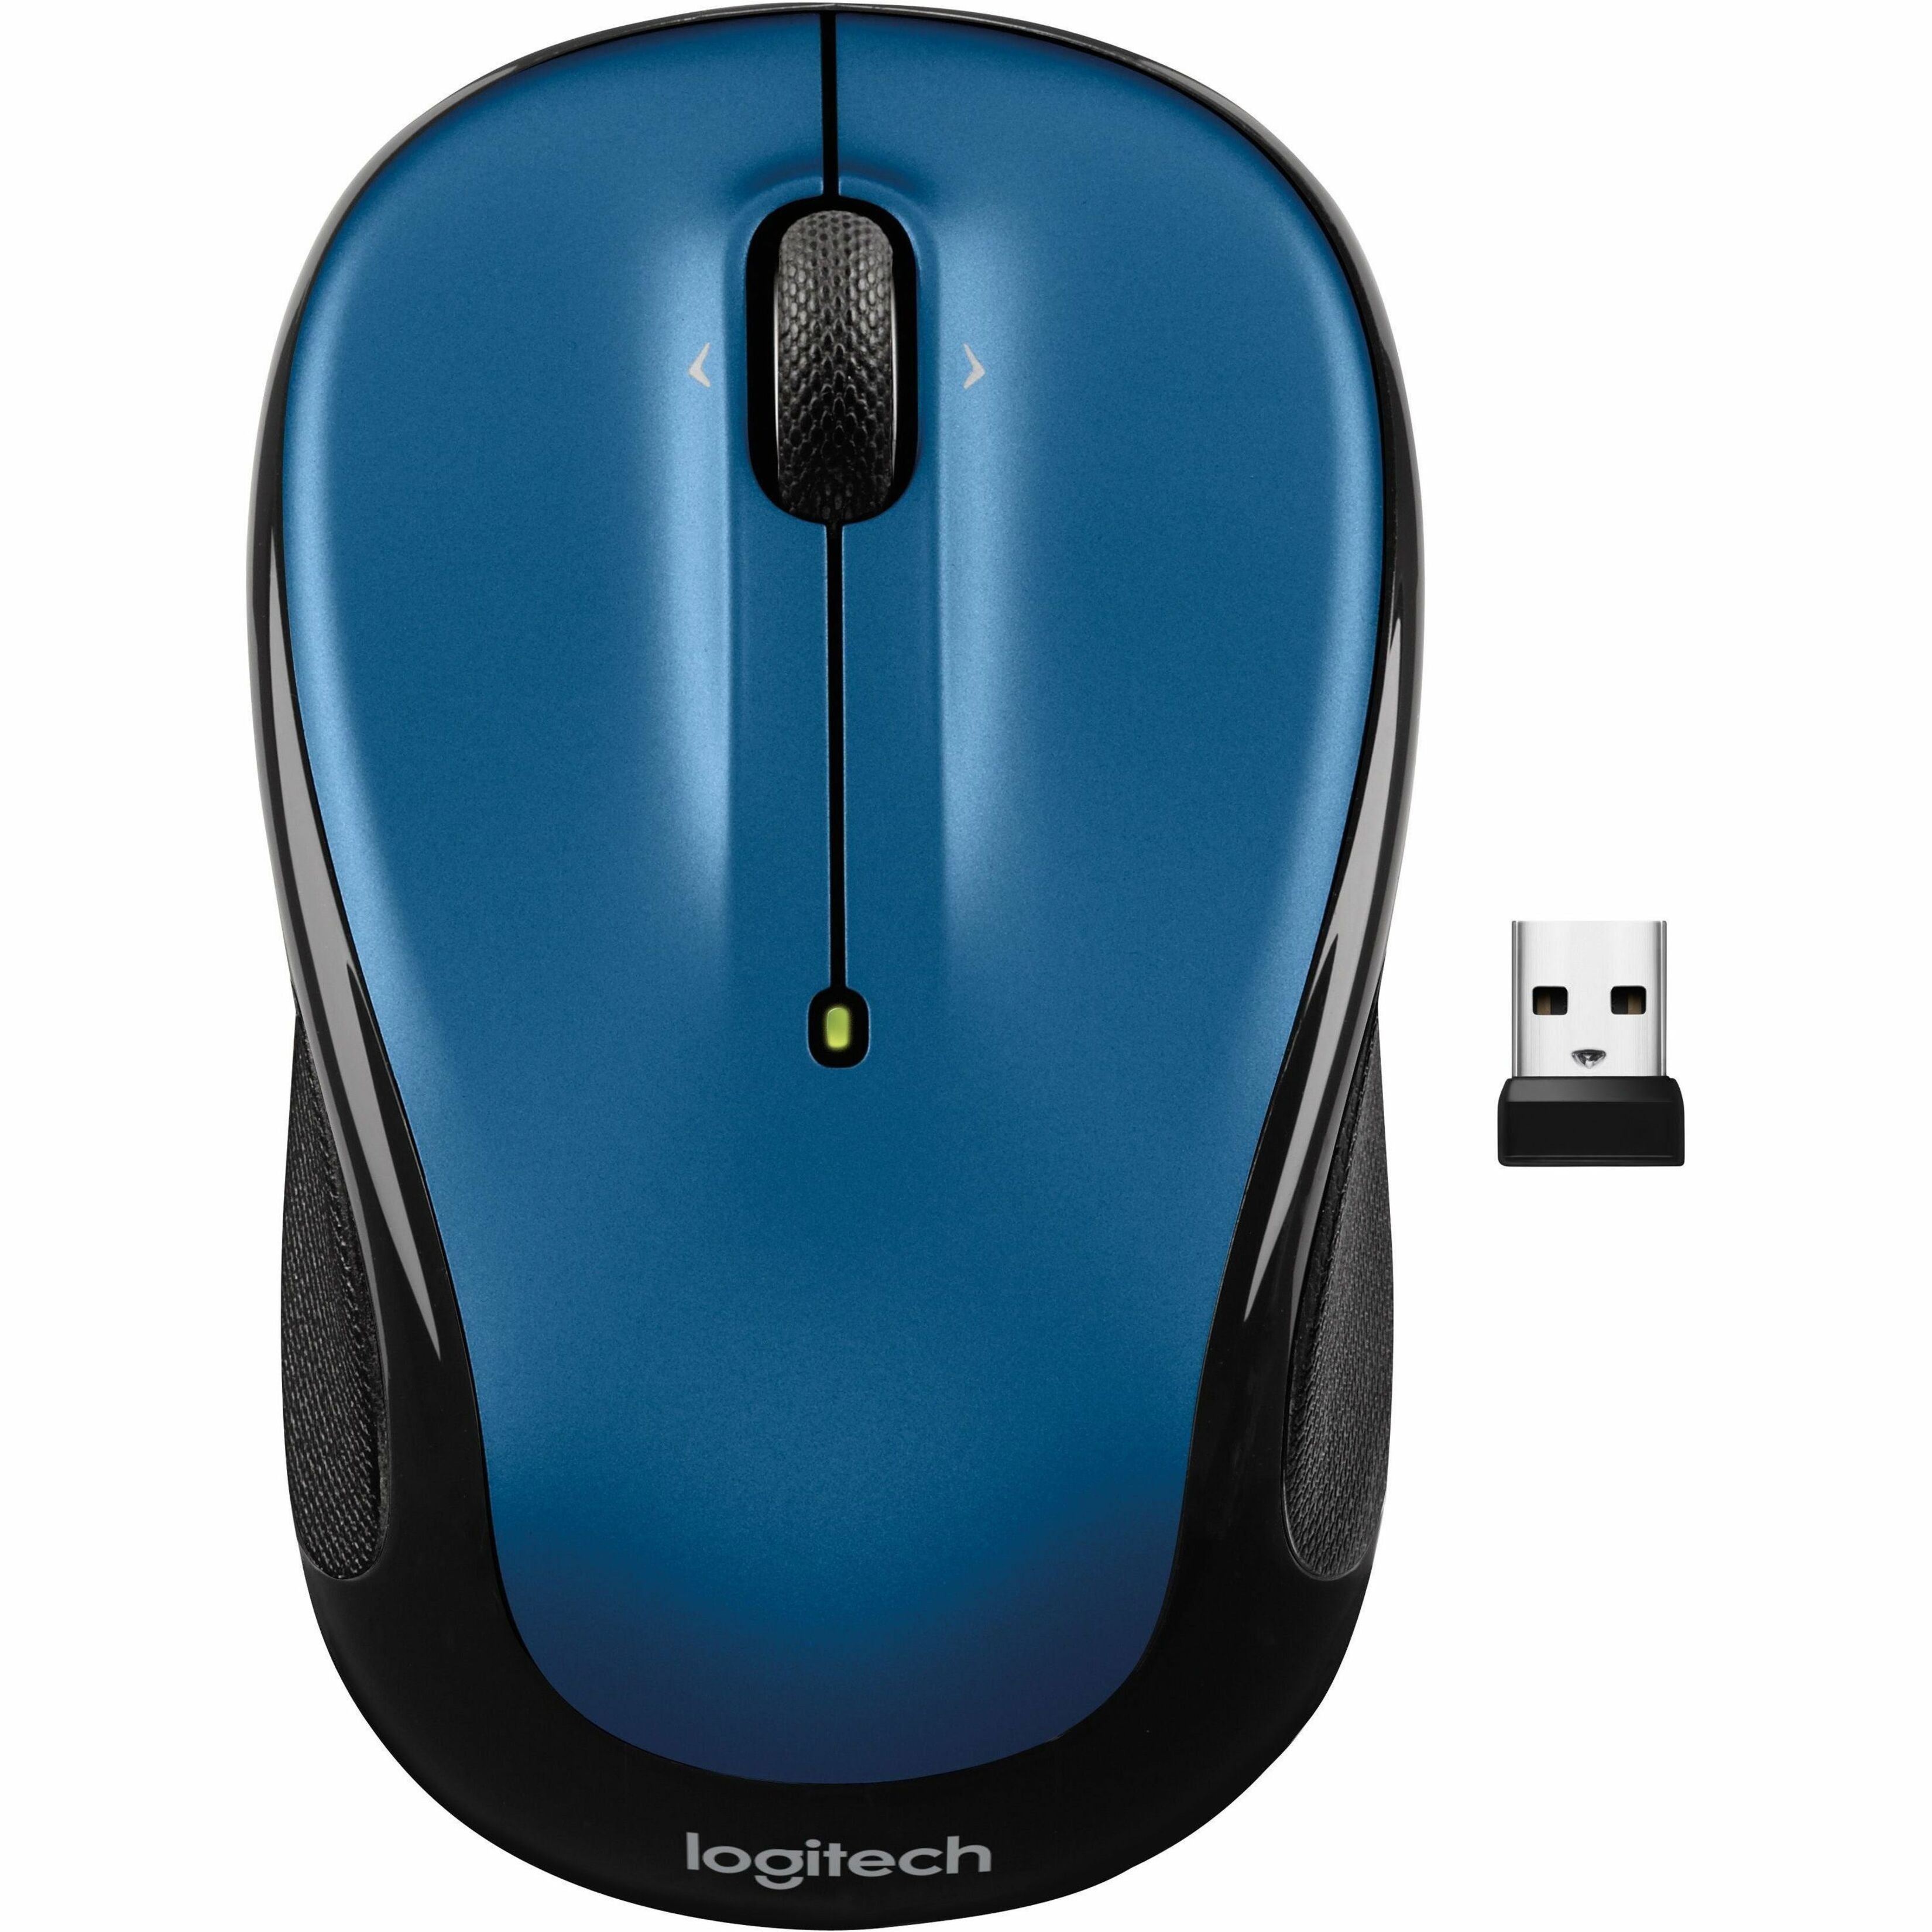 Logitech 910-006829 Mouse, Wireless, Blue, 1 Year Limited Warranty